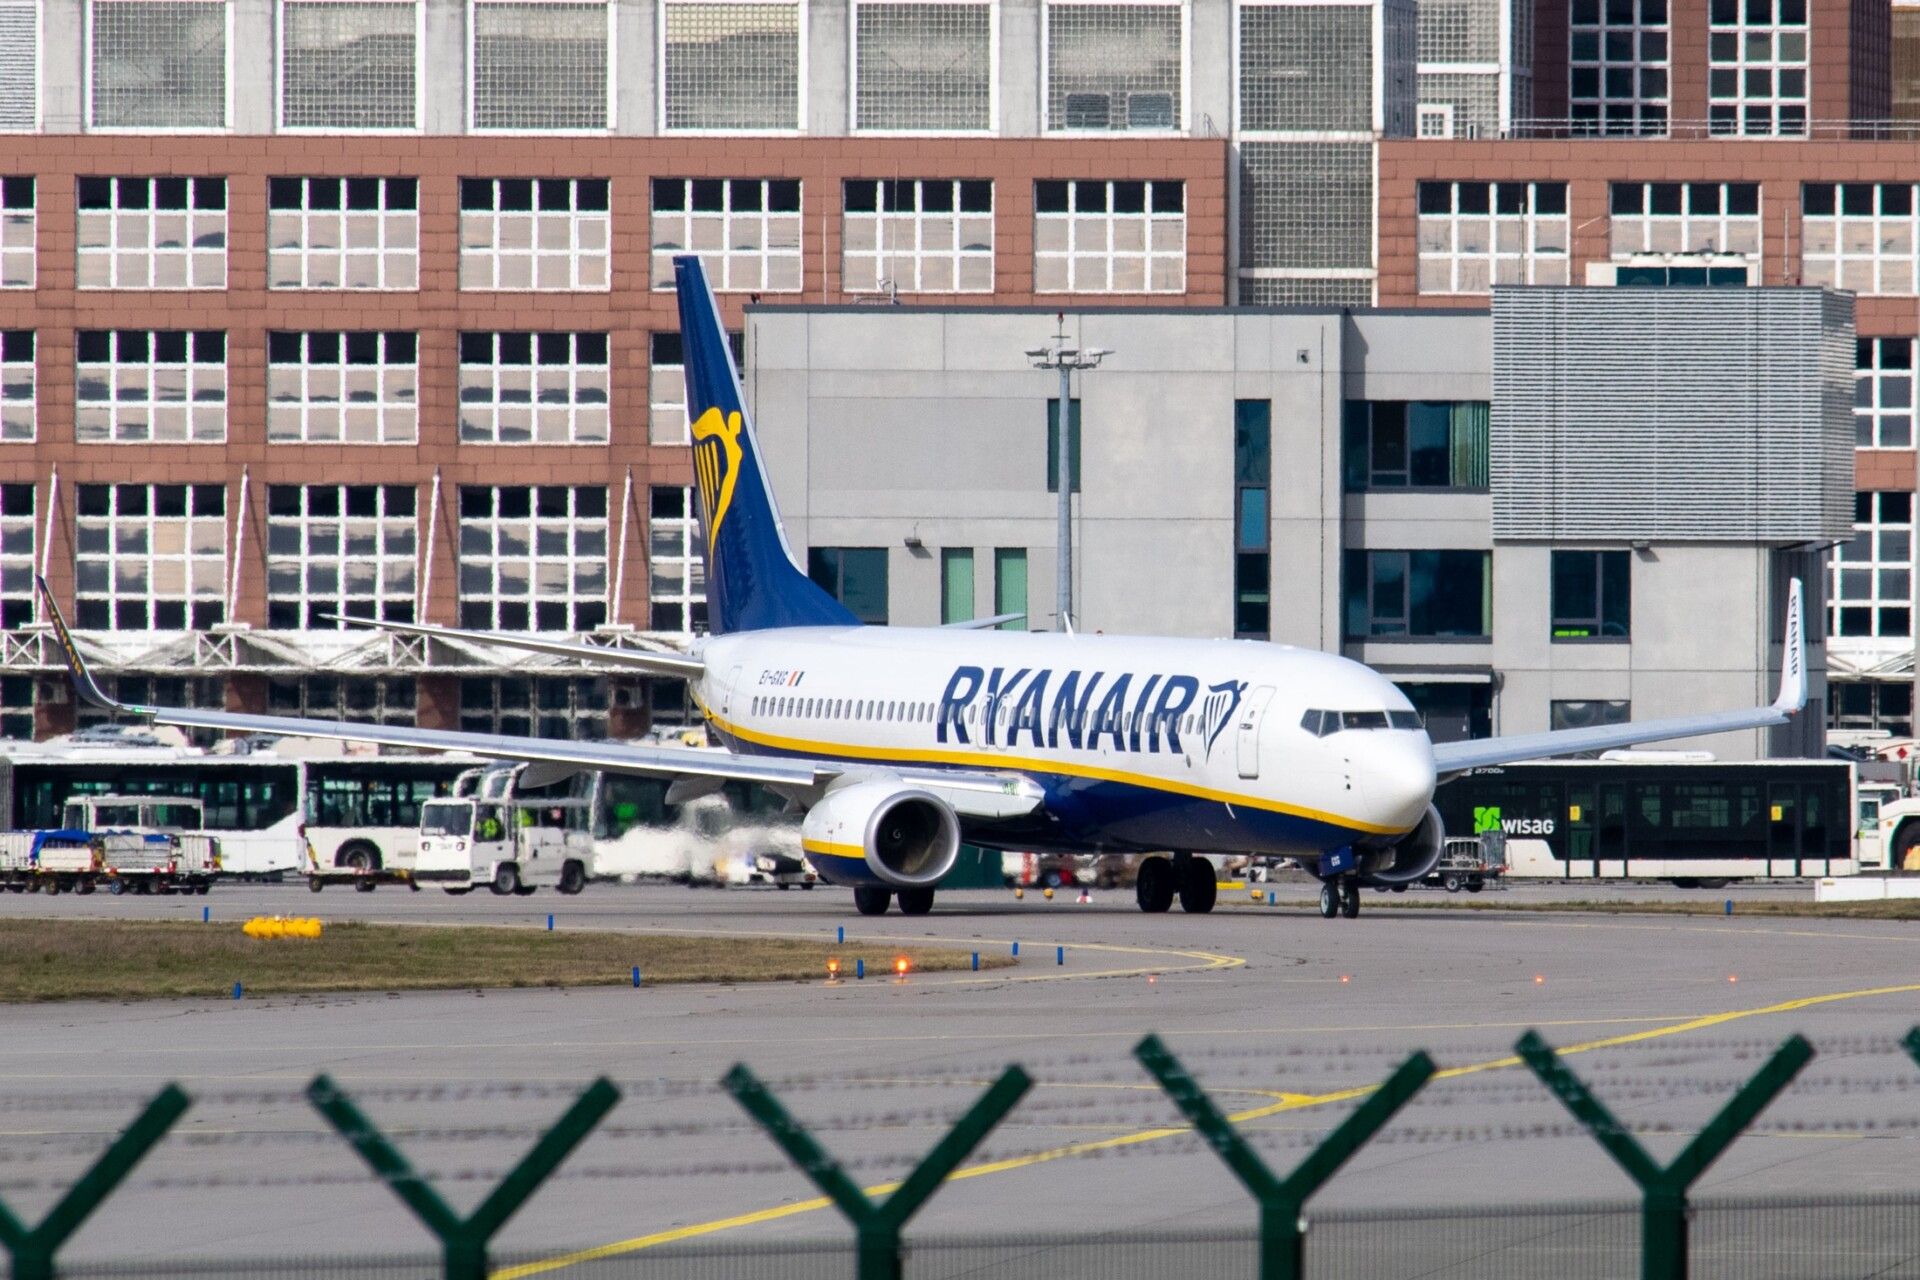 Thomas-Boon-46-Ryanair-2020